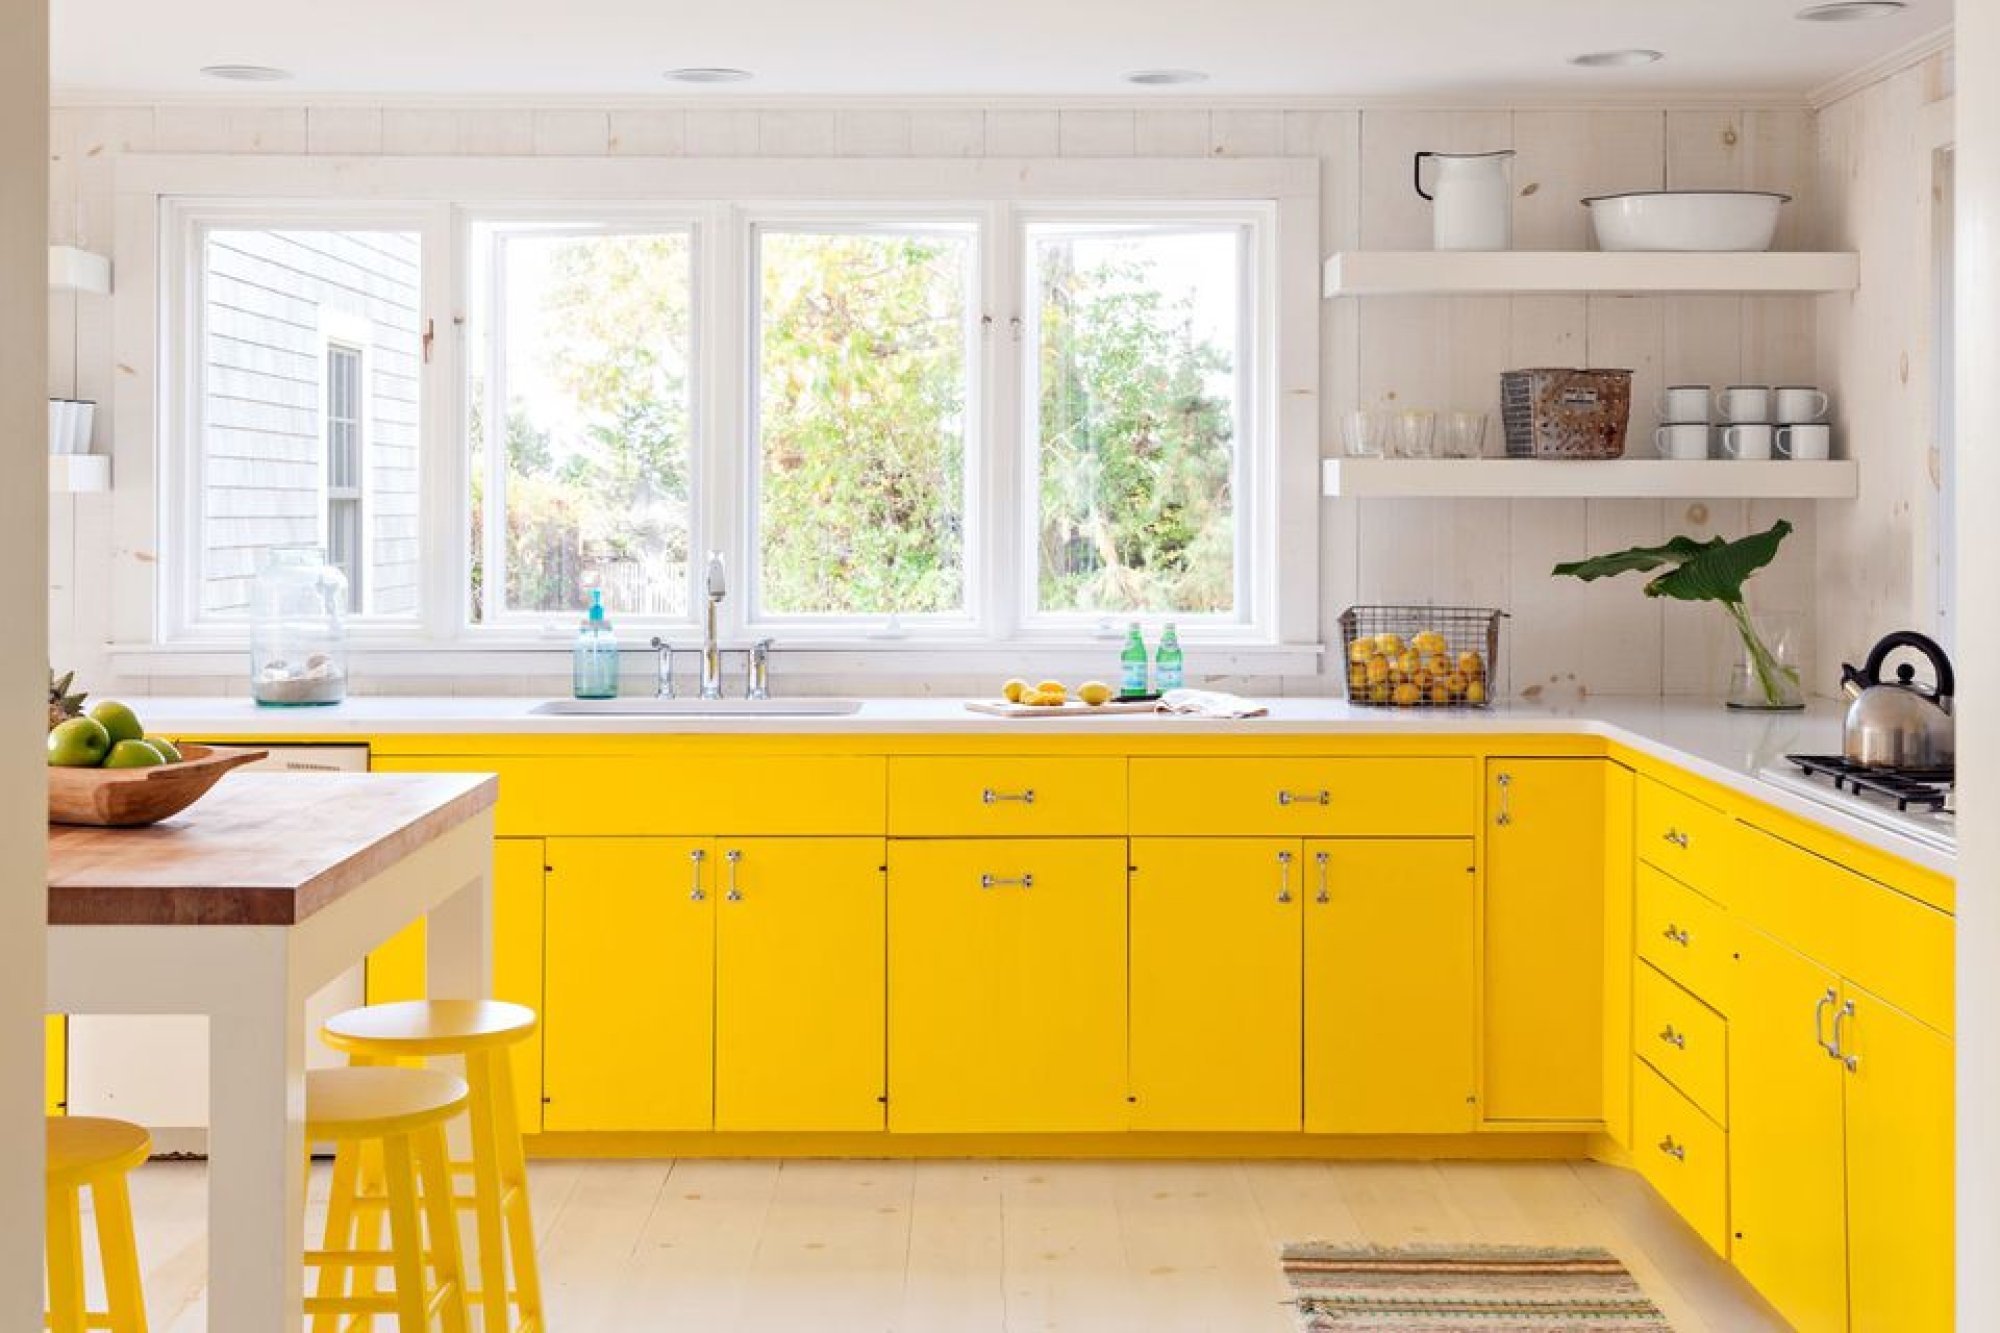 Бело желтая кухня. Желтая кухня икеа. Кухня в желтом цвете. Желтый цвет в интерьере кухни. Желтая кухня в интерьере.